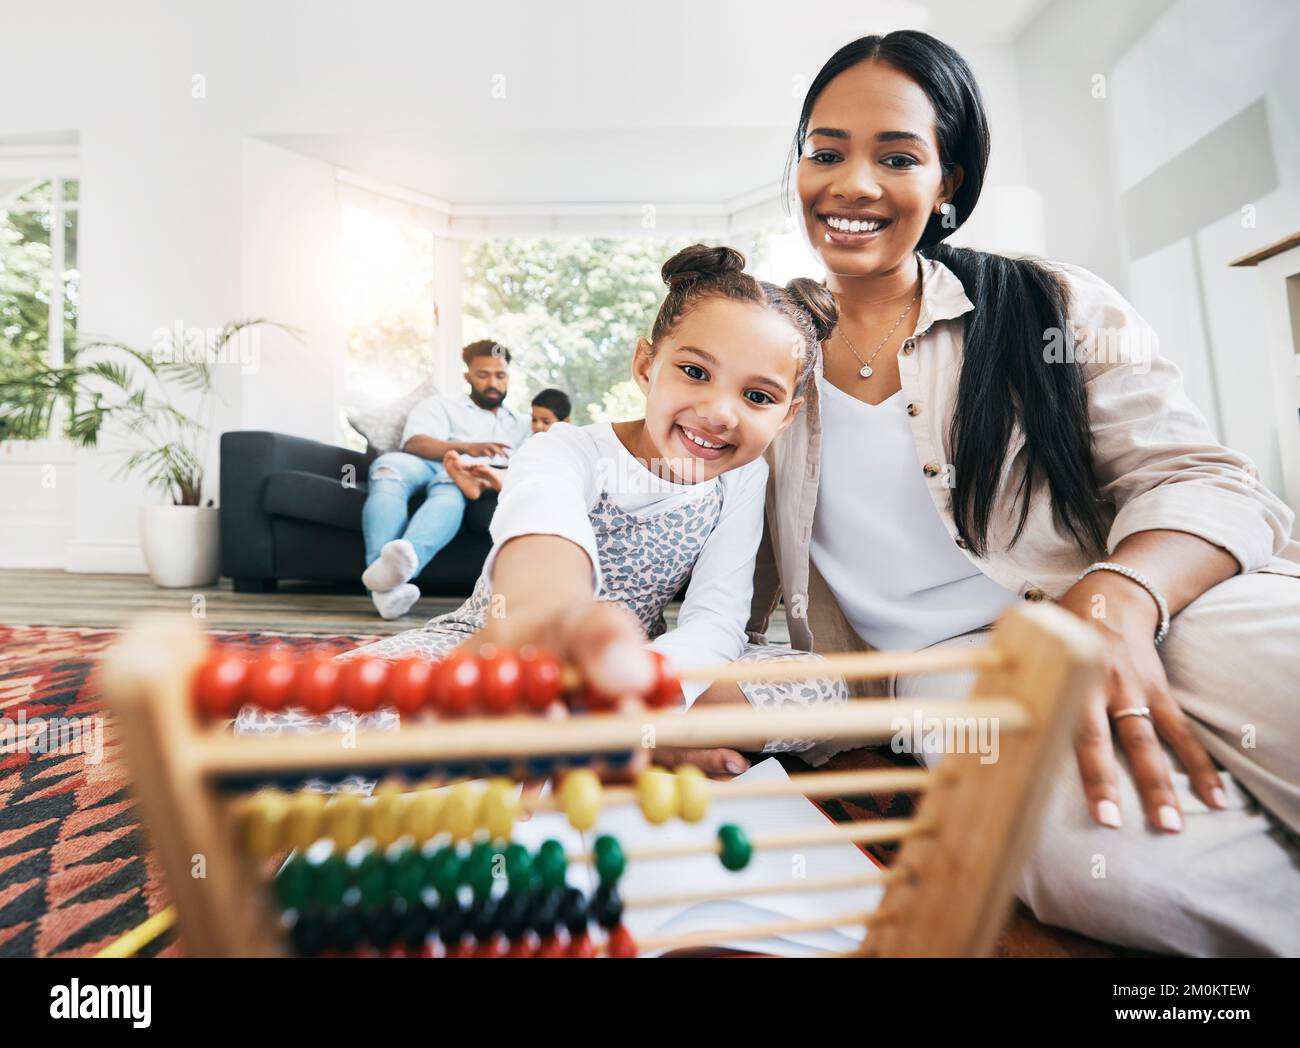 Die hispanische Mutter sitzt zu Hause im Ausfallschritt auf dem Boden und lächelt mit ihrer Tochter, während sie mit Lernspielzeug spielt. Liebenswert kleines Mädchen spielen Stockfoto